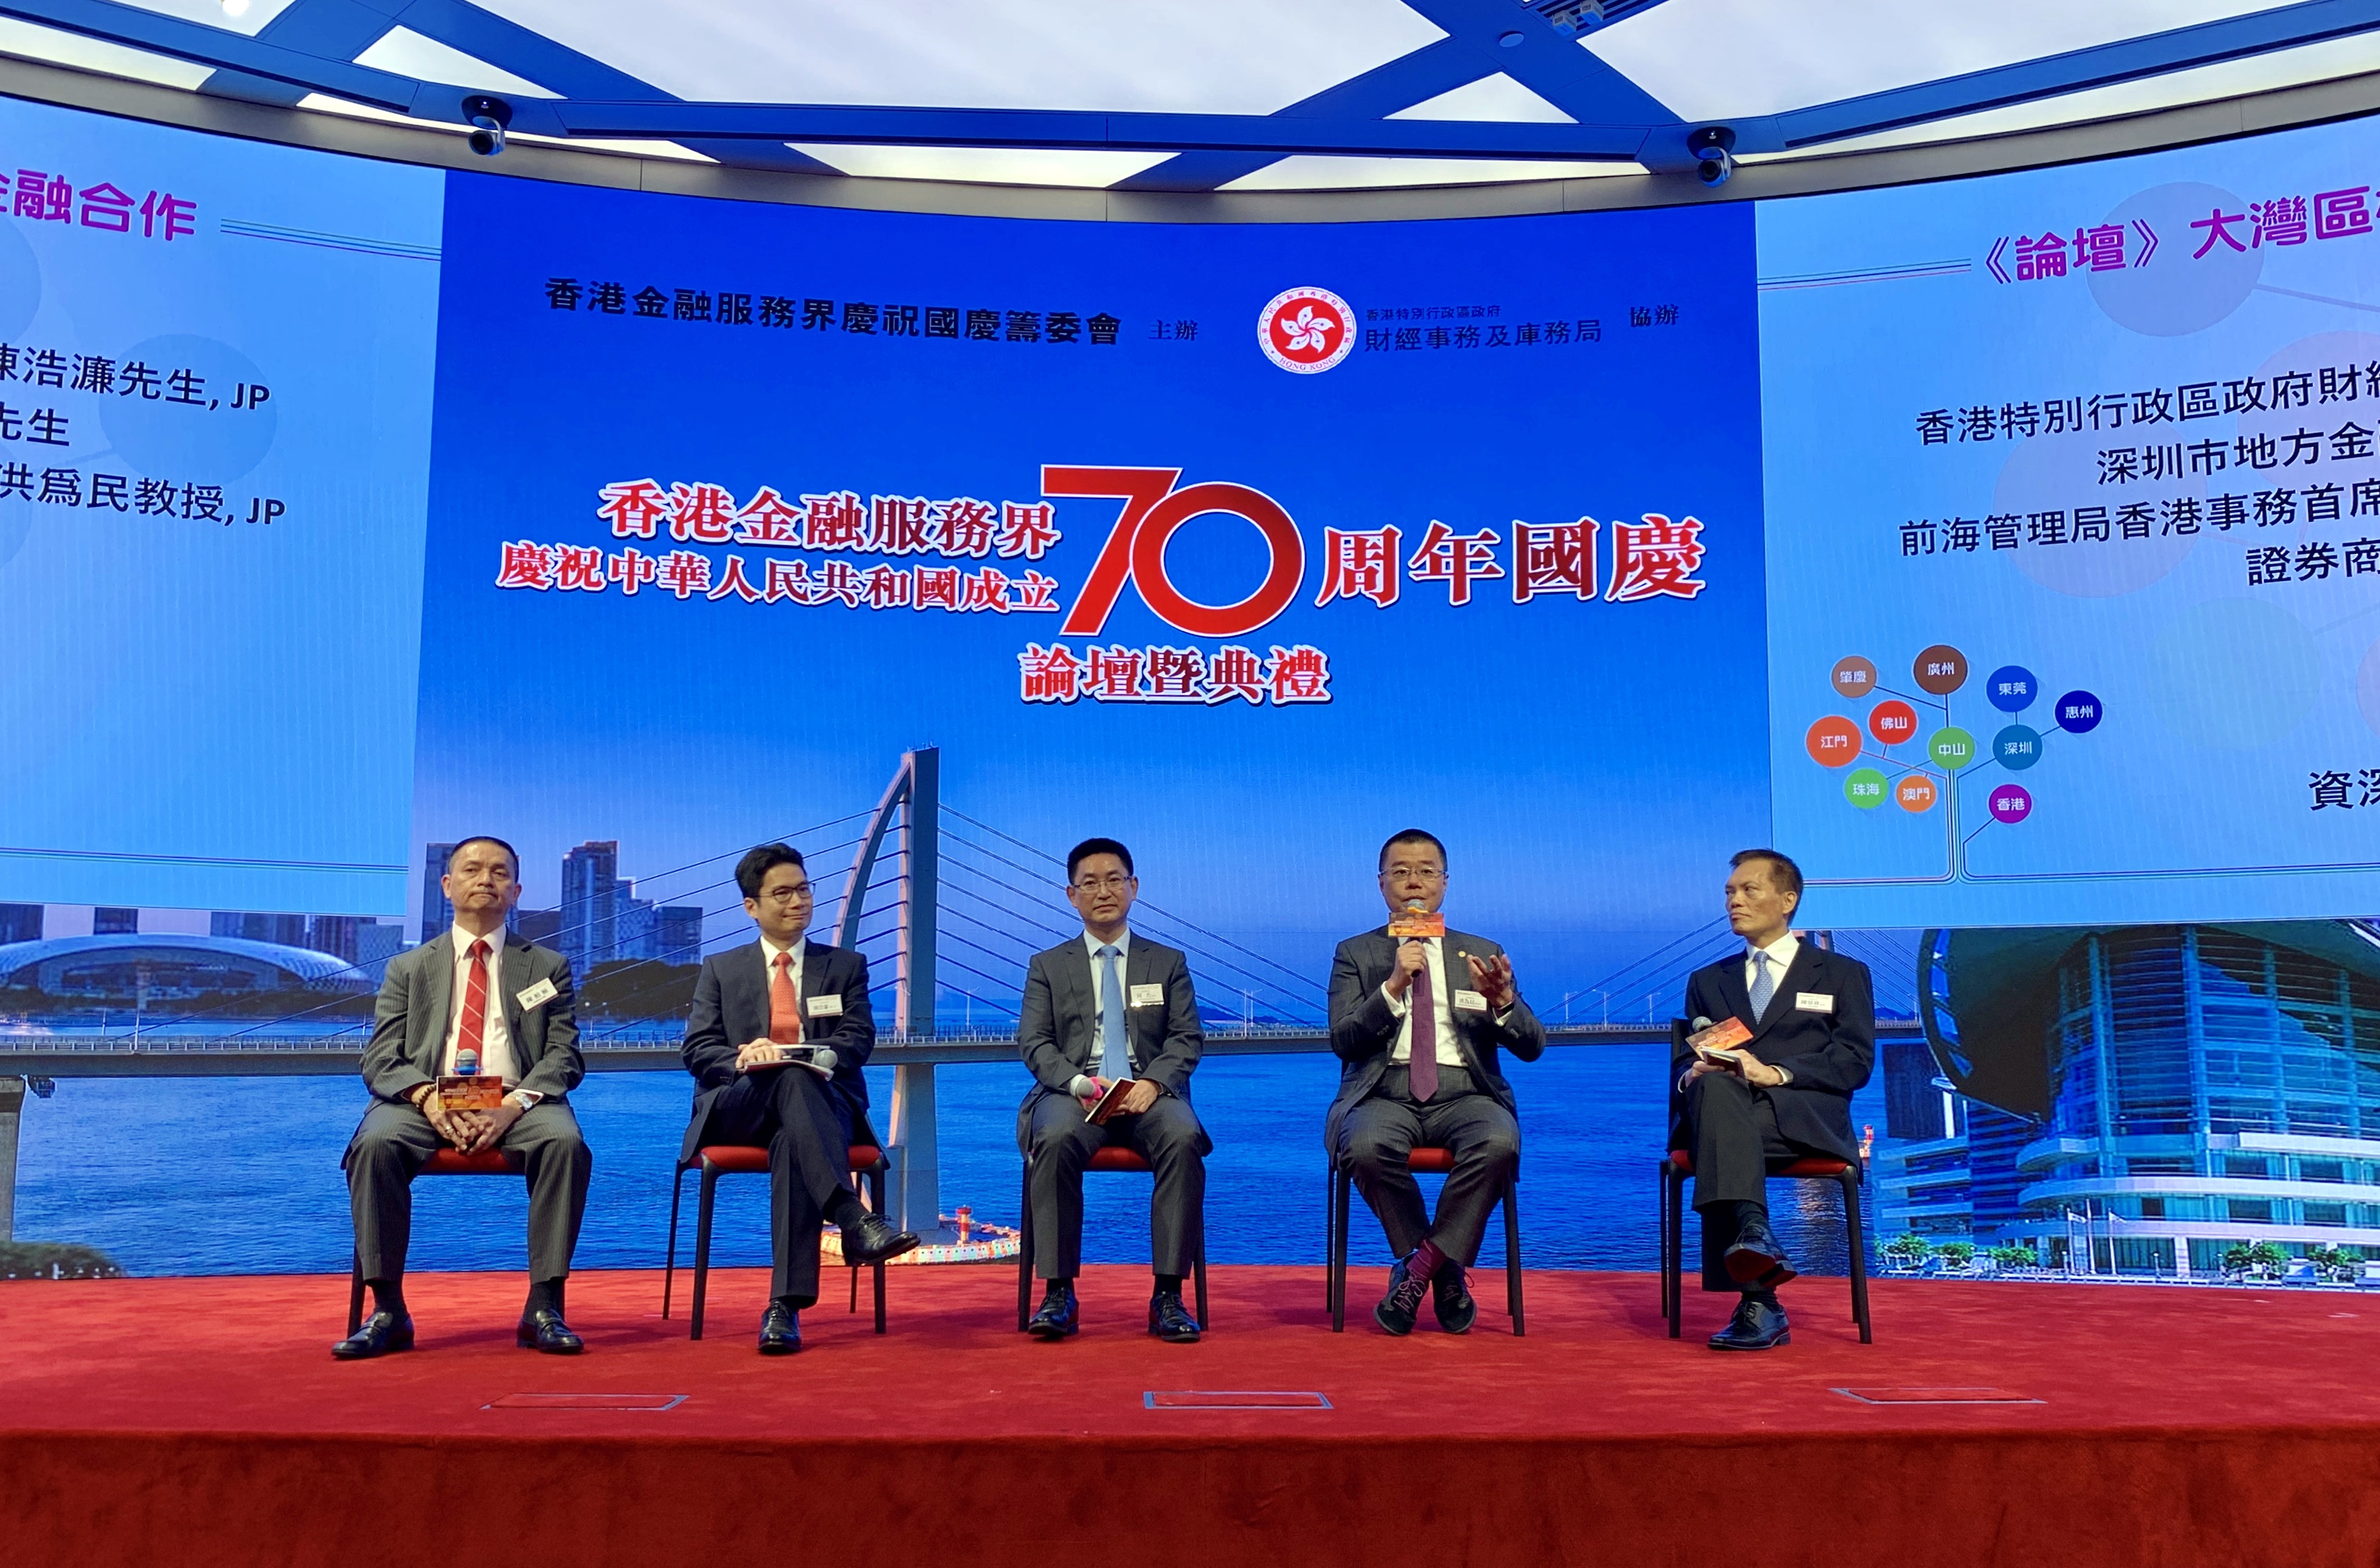 2019年9月10日香港金融服務界慶祝中華人民共和國成立七十周年國慶論壇暨典禮